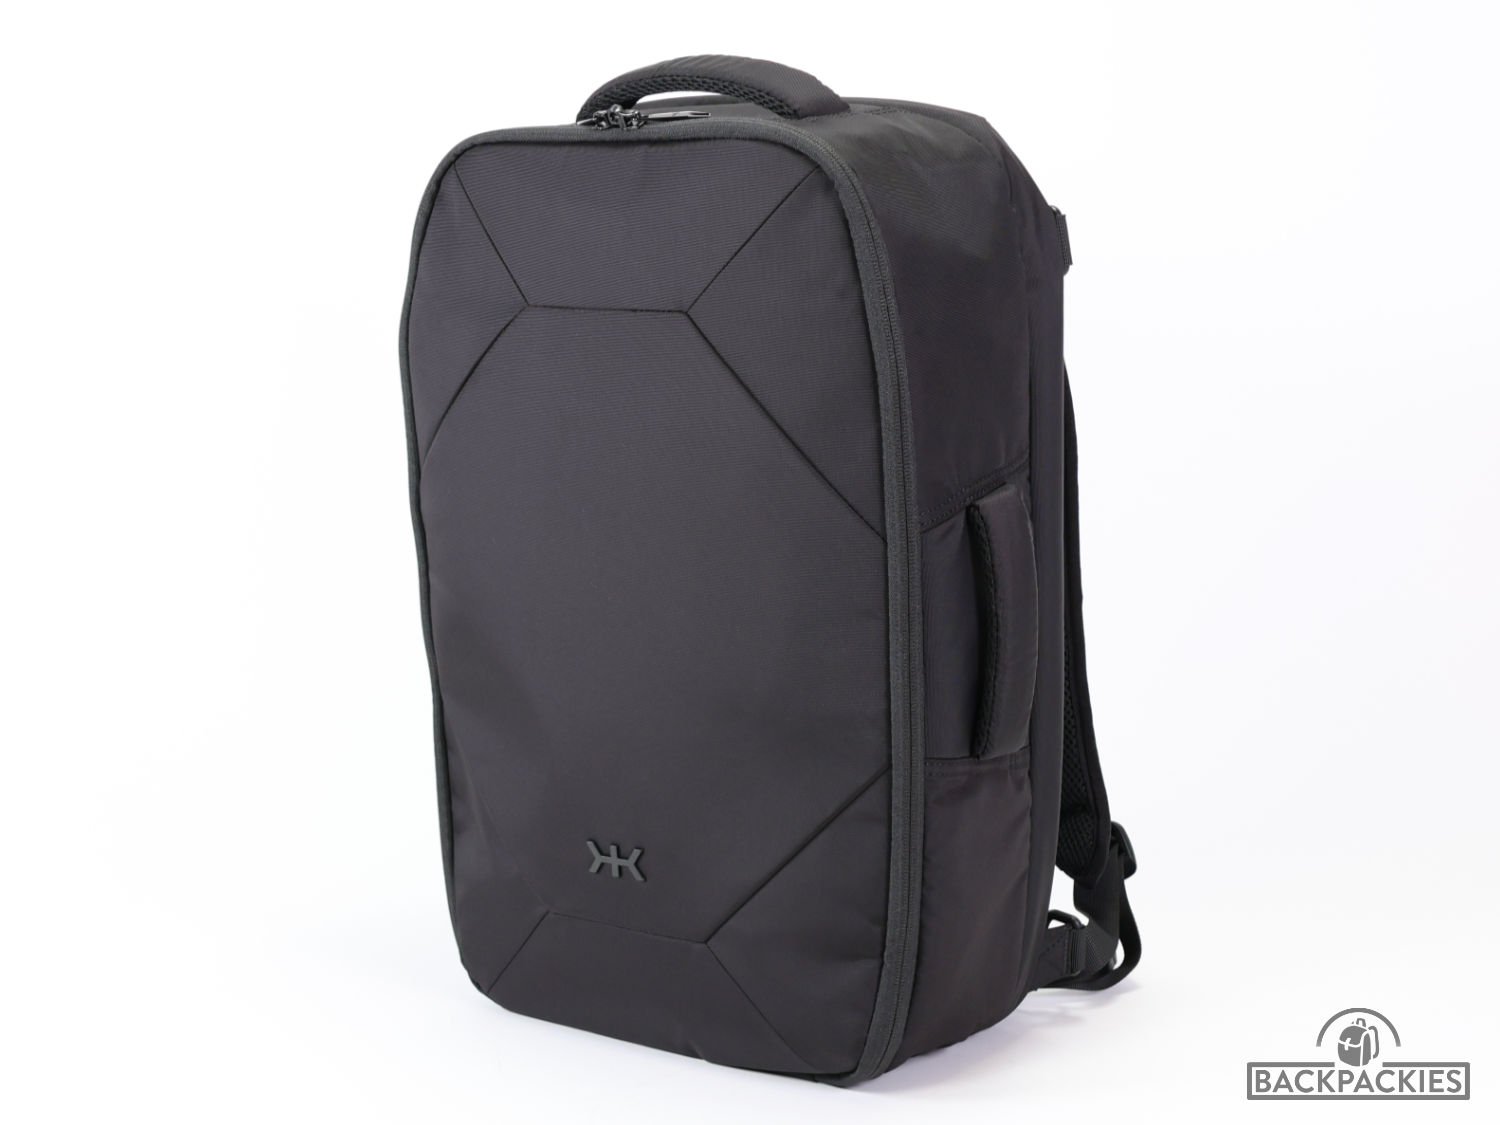 Knack Convertible Duffel backpack review